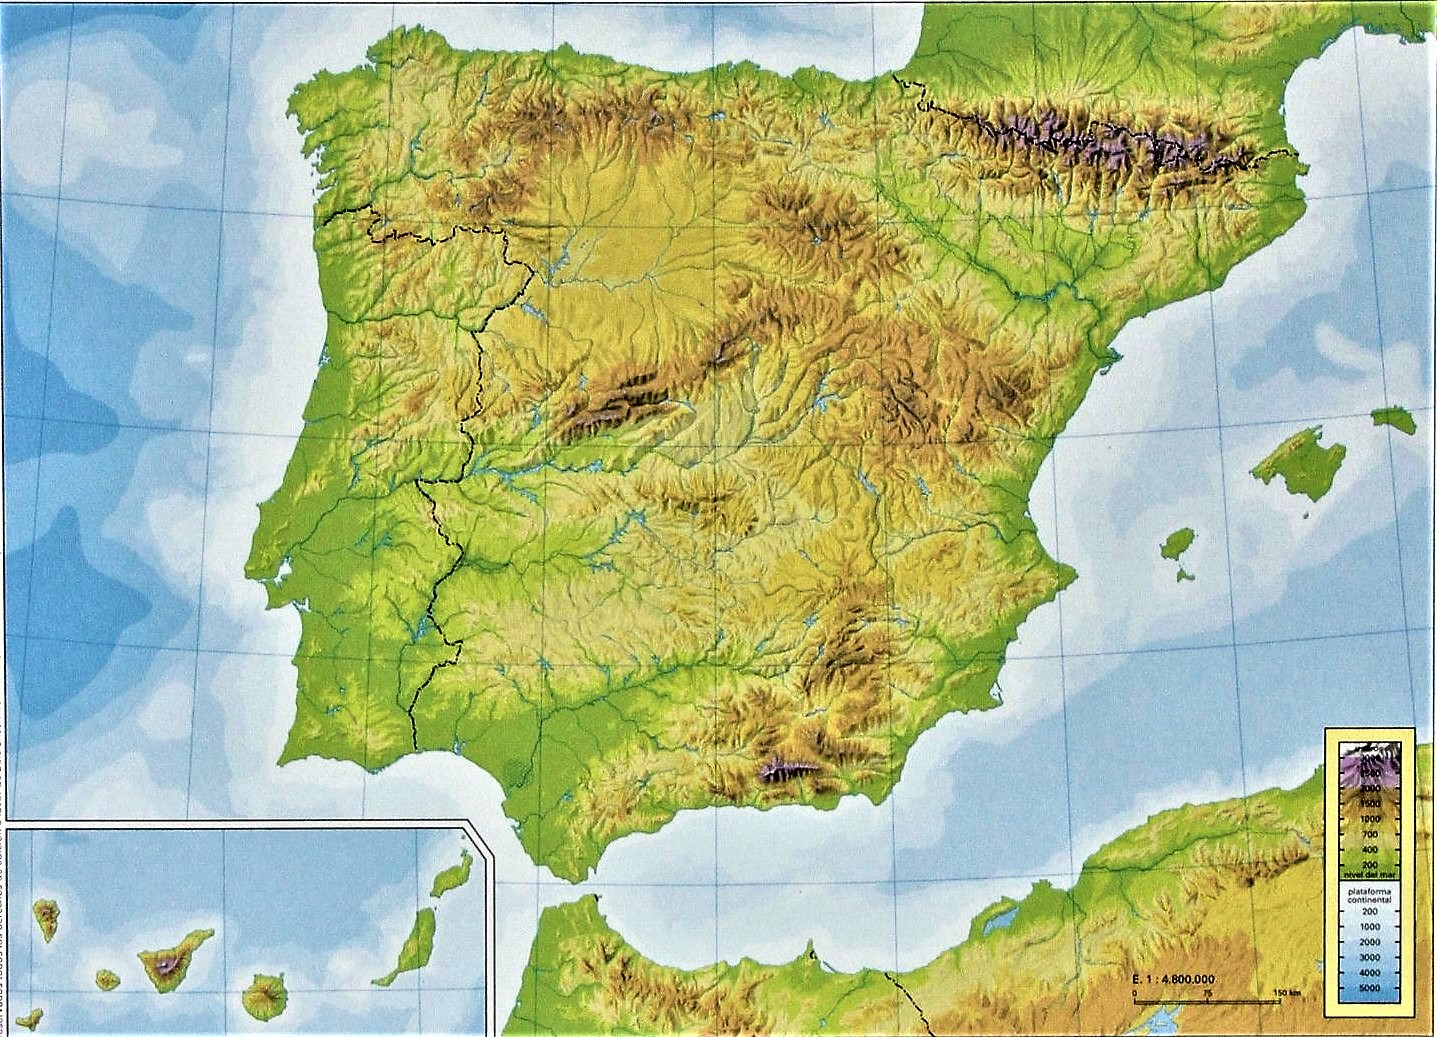 Juegos de Geografía | Juego de Mapa físico de España: Coloca en su